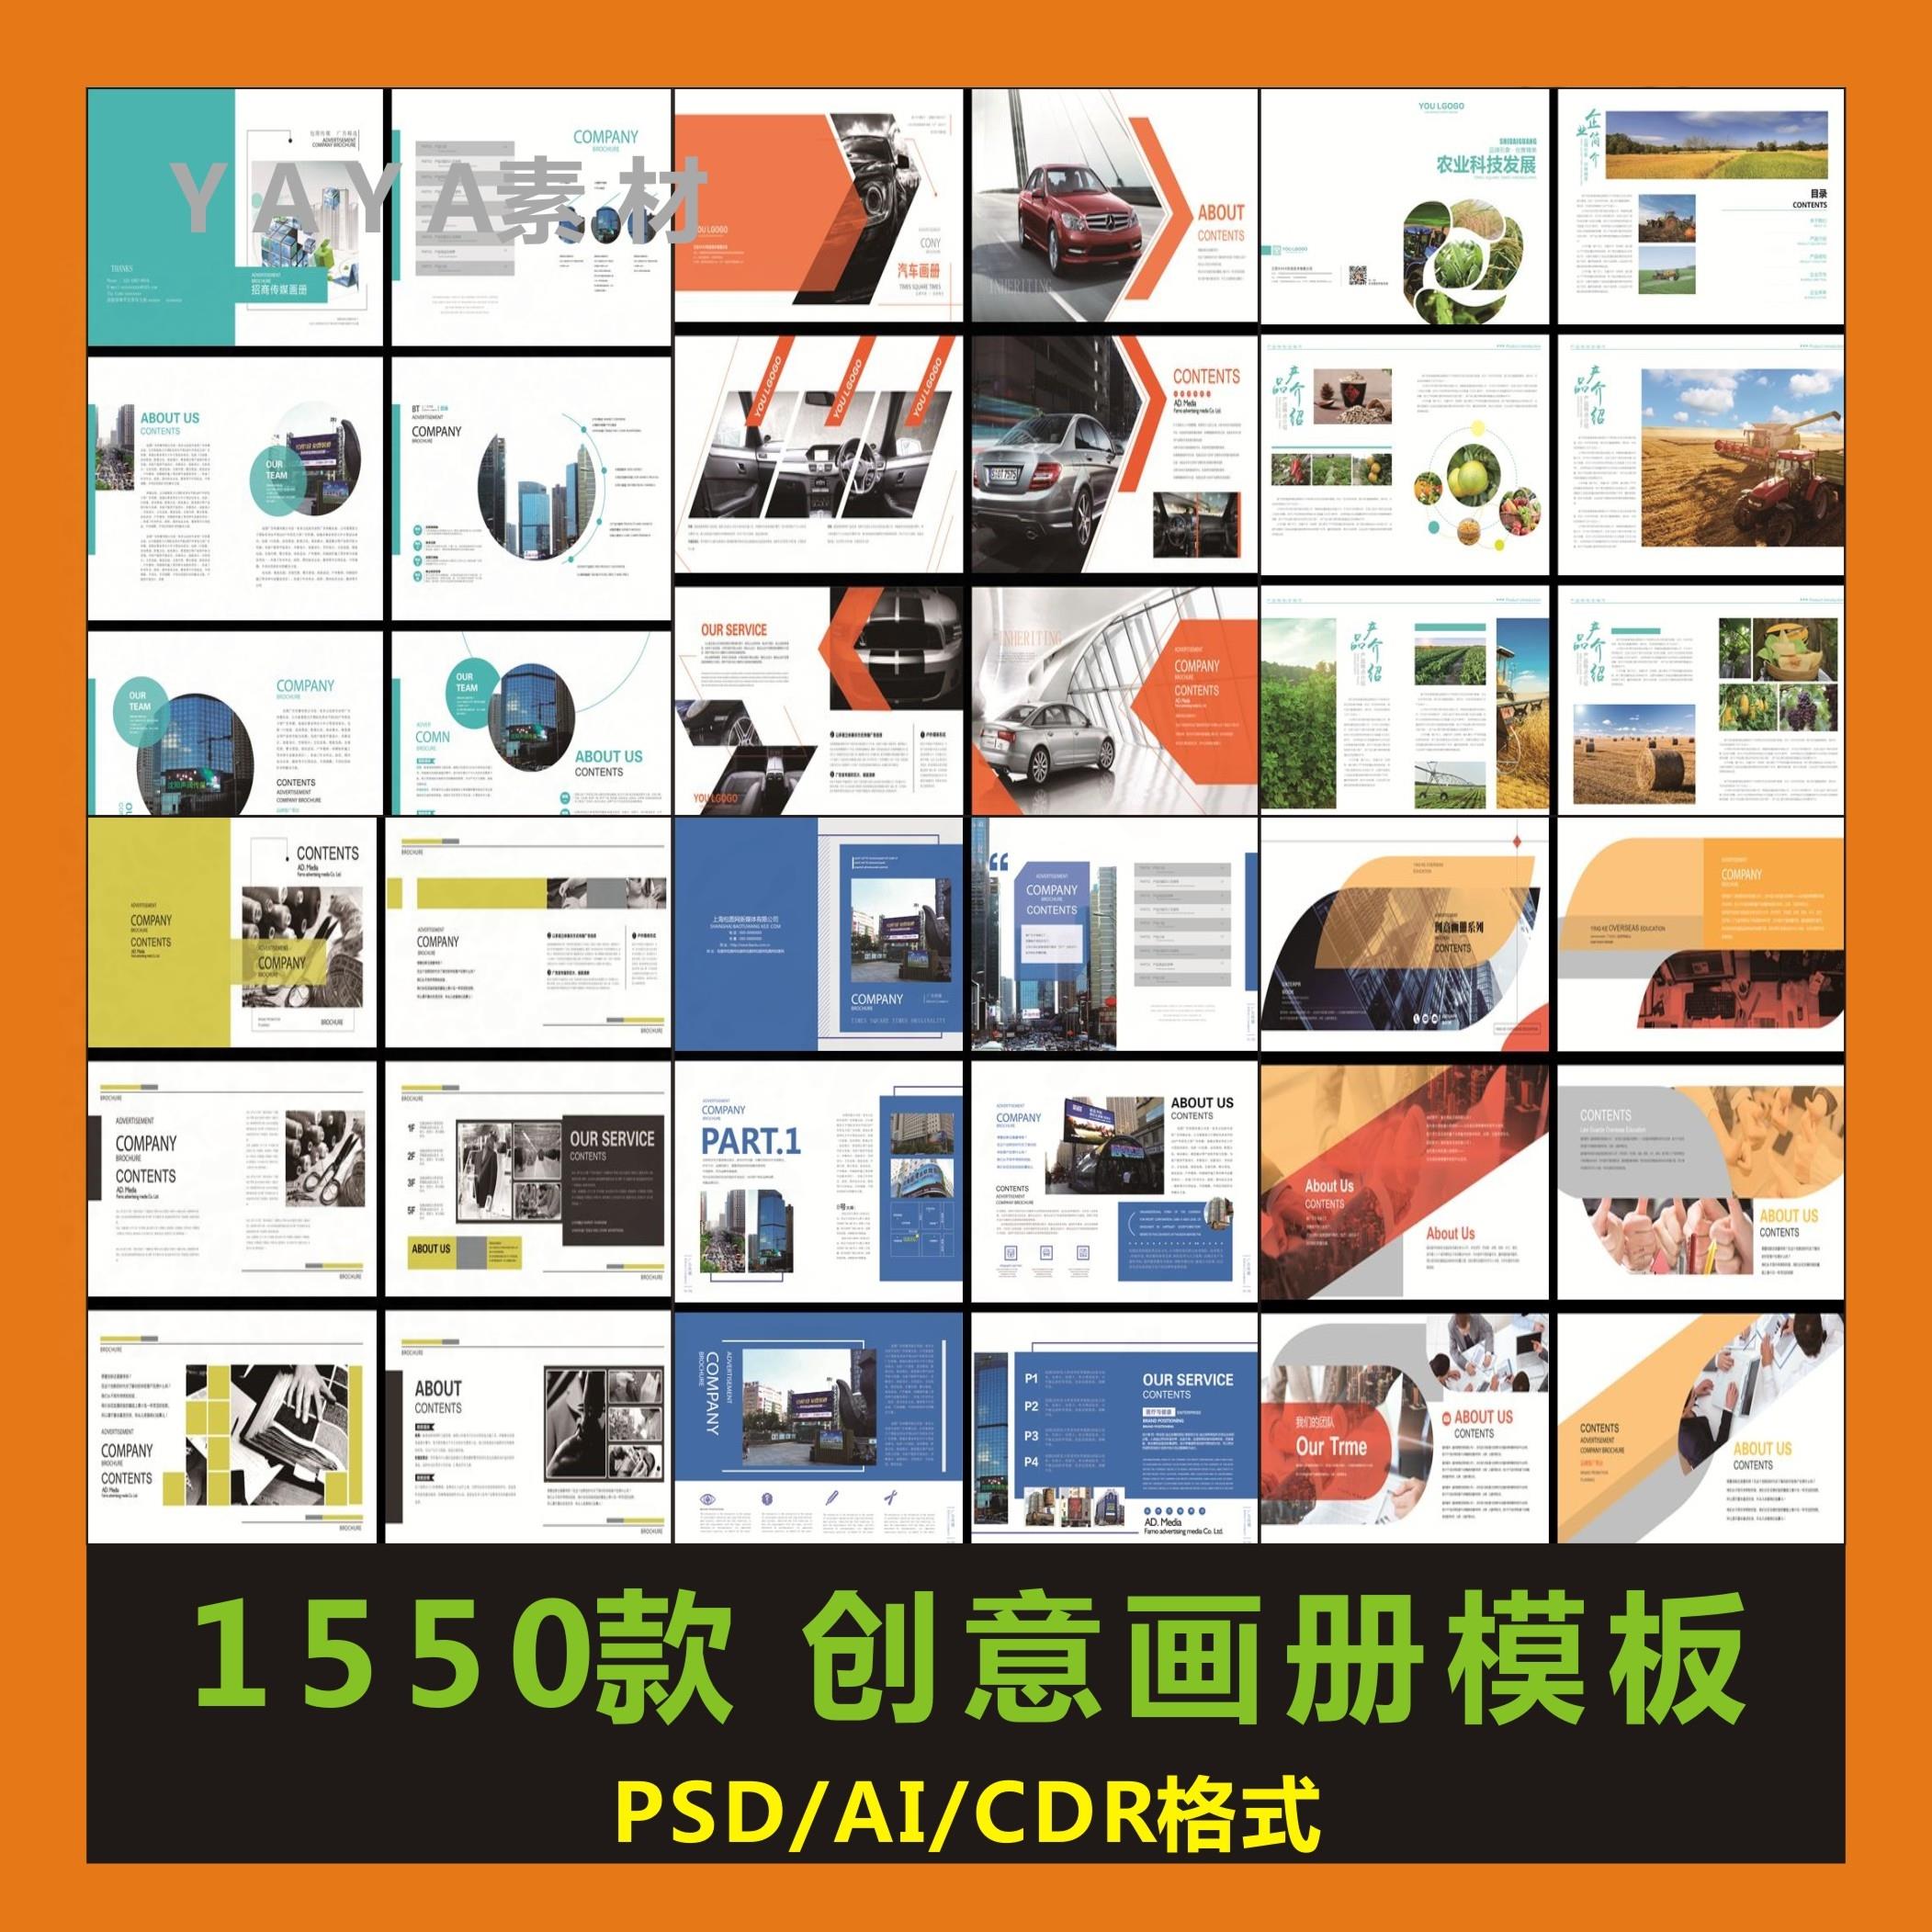 企业创意画册宣传册模板产品手册封面内容PSD/CDR/AI排版设计素材